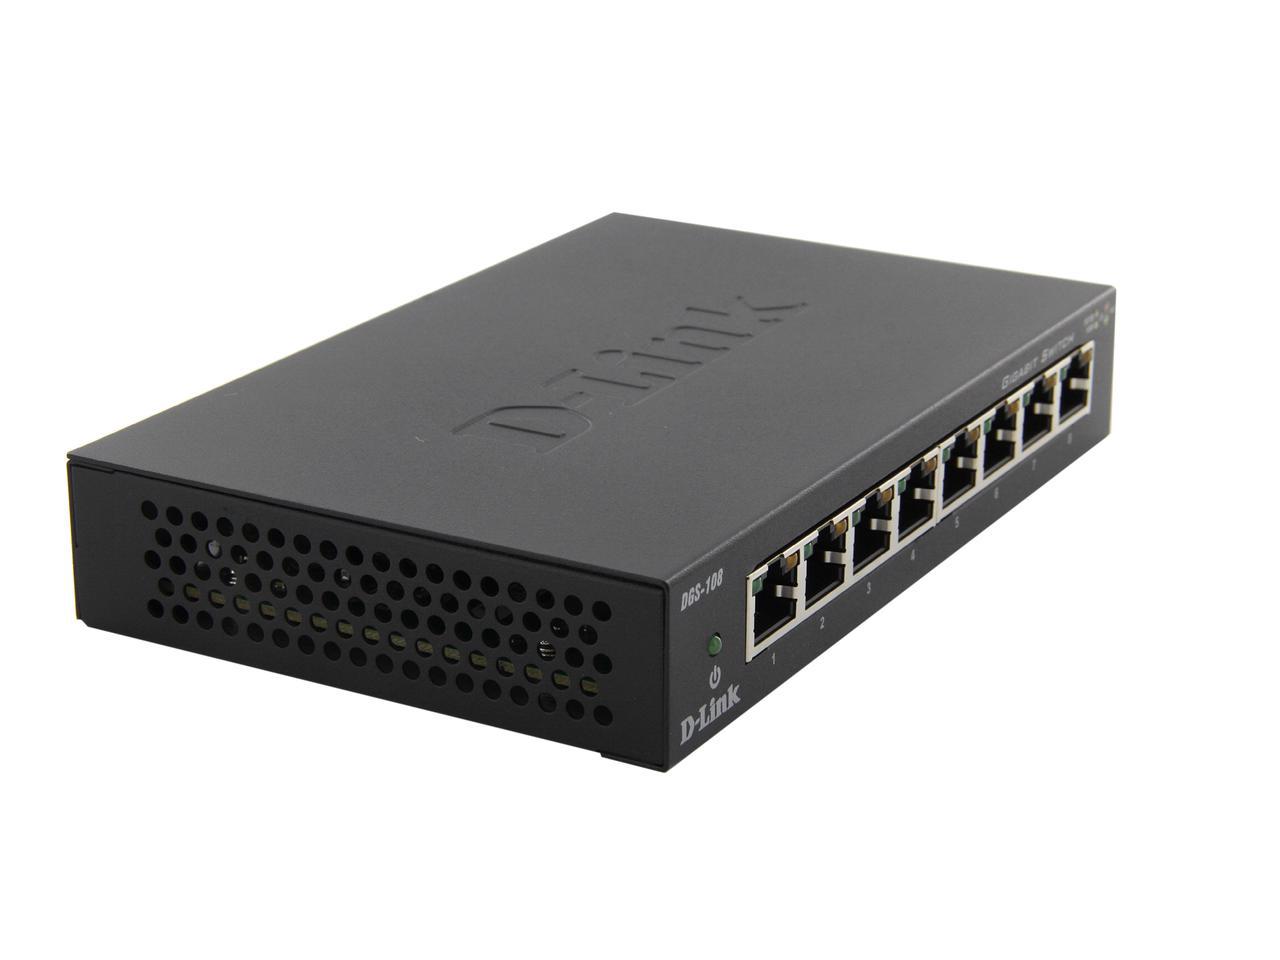 D-link 5 To 14 Ports DES 108 Ethernet Unmanaged Desktop Switch